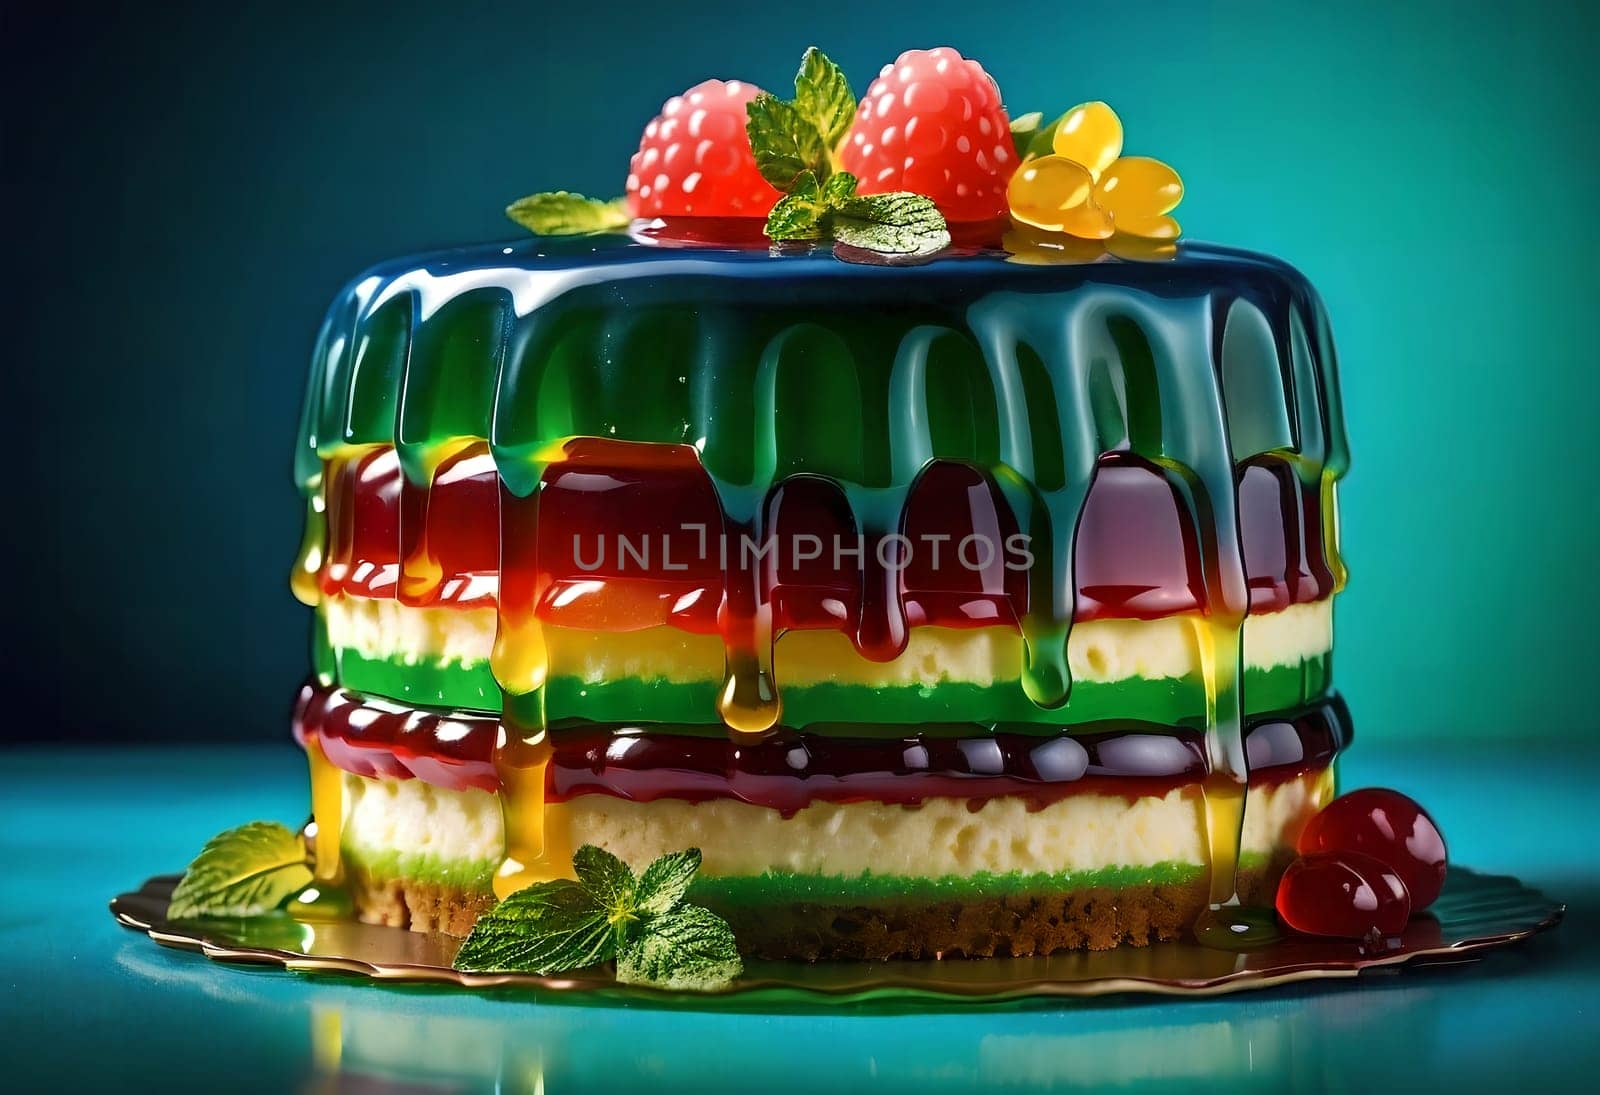 beautiful multi-layer multi-colored jelly cake. by Rawlik